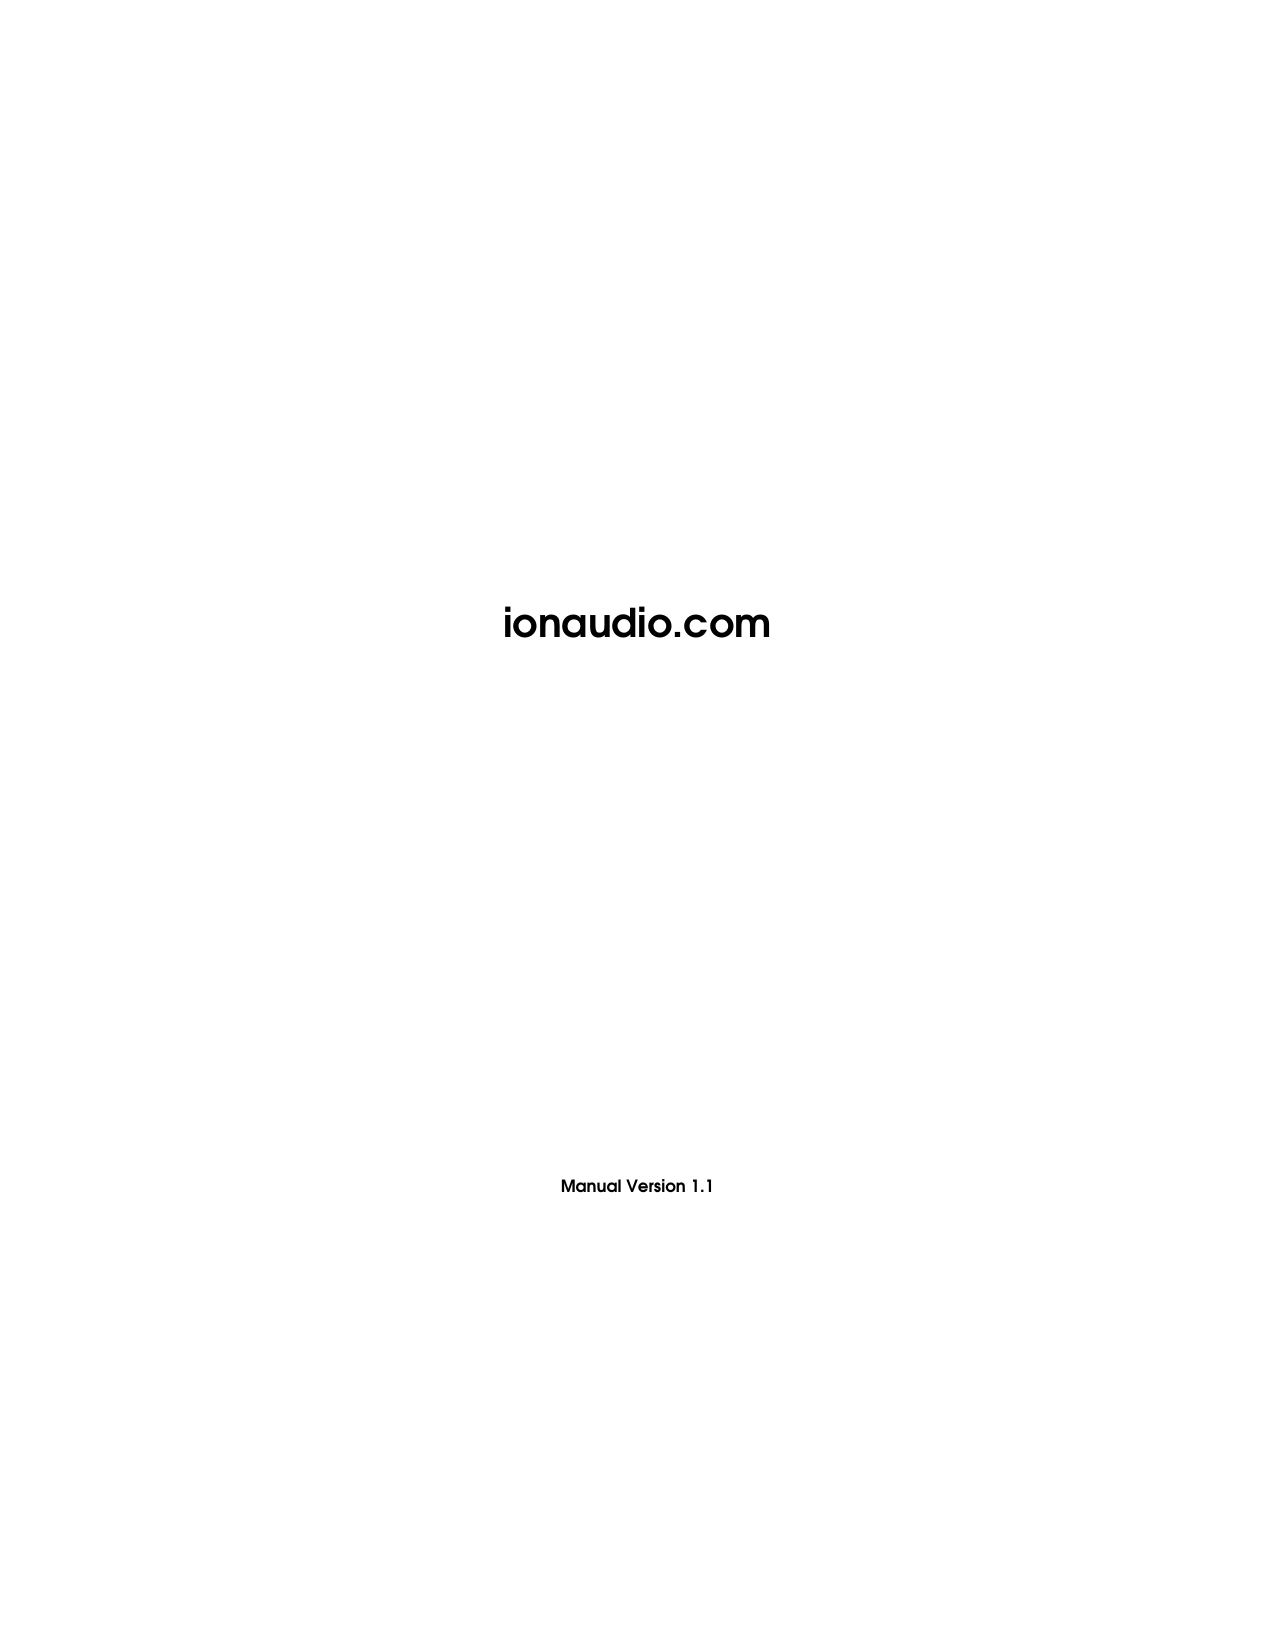               ionaudio.com            Manual Version 1.1 